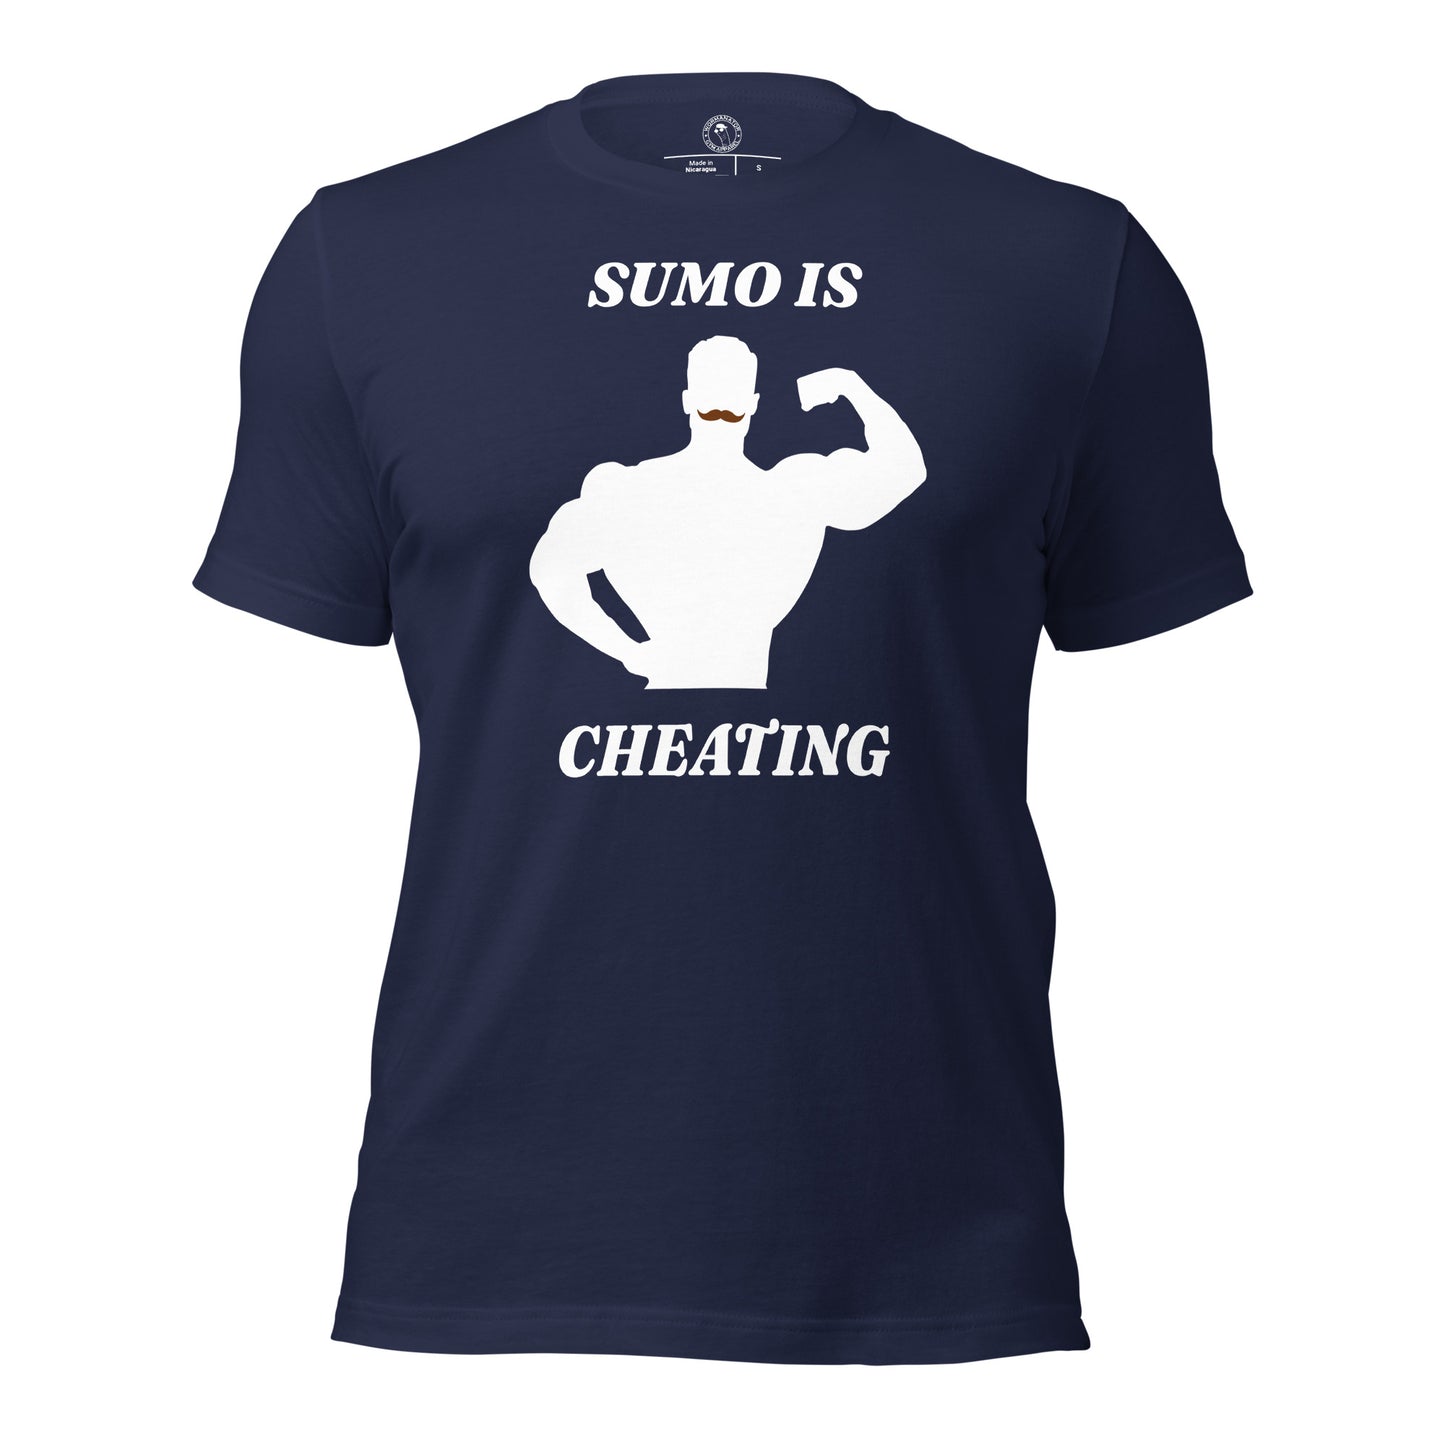 CBum Sumo is Cheating Shirt in Navy